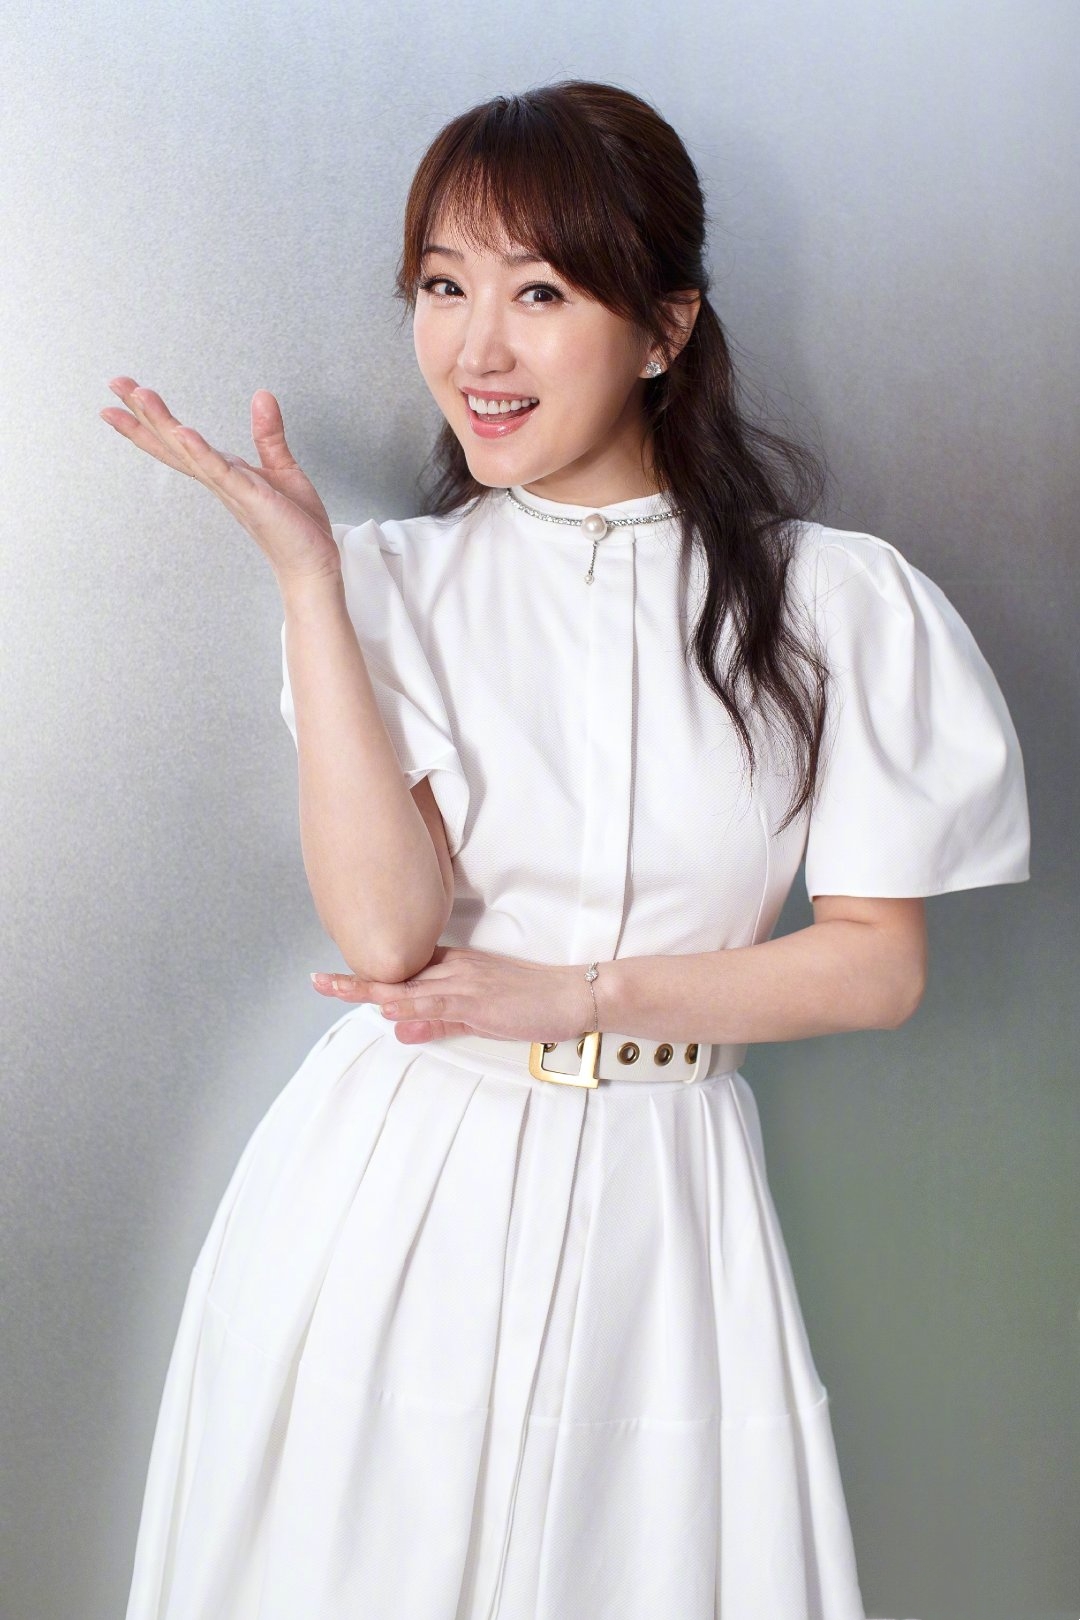 杨钰莹这次太美,扎甜美公主头穿白裙,不硬凹造型48岁也有少女感